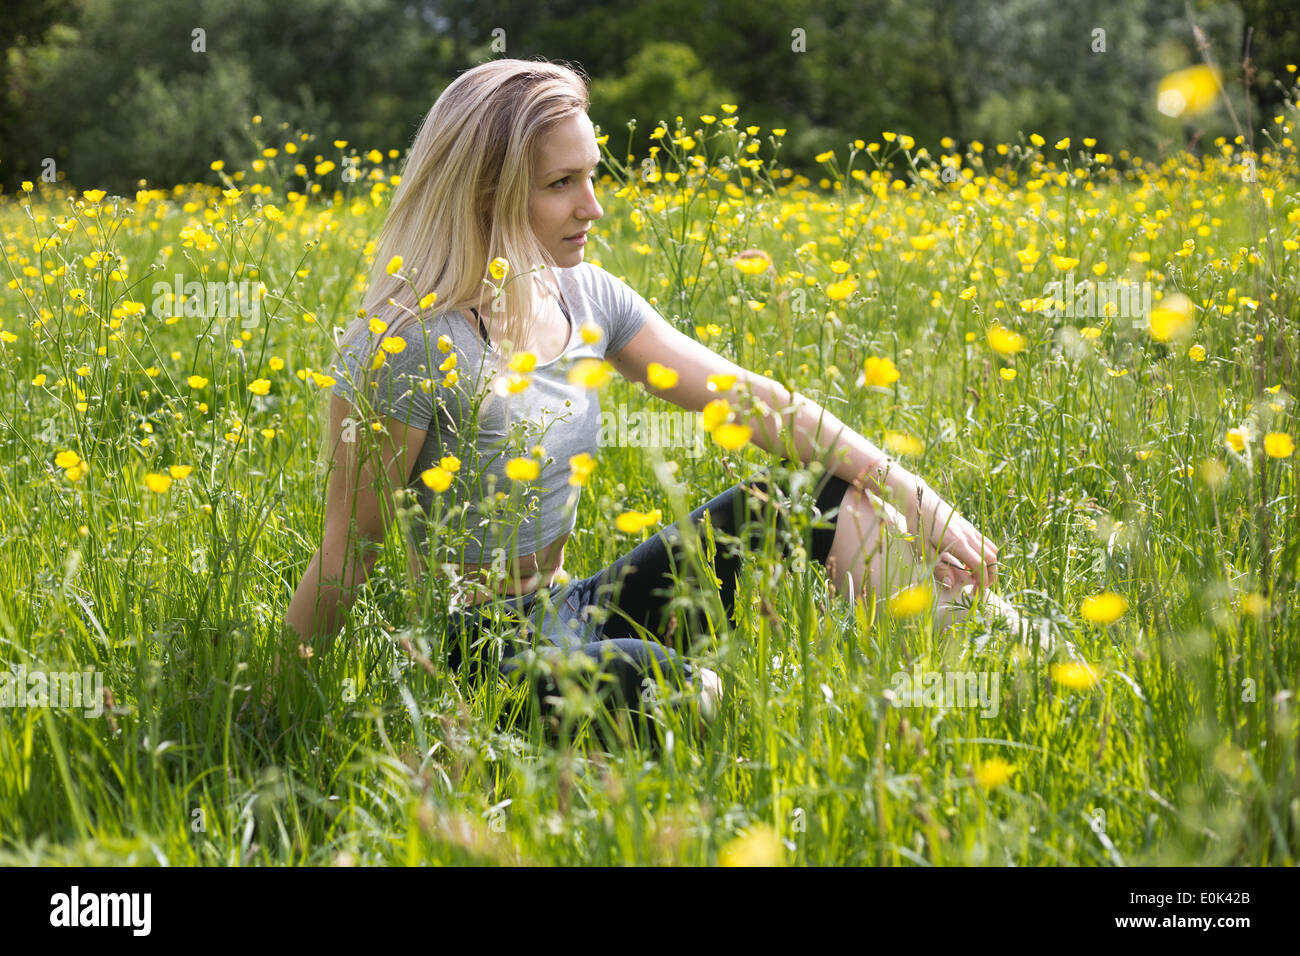 Dame blonde portant des guêtres noires et un top gris assis dans l'herbe avec des fleurs jaunes Hampstead Heath. Banque D'Images